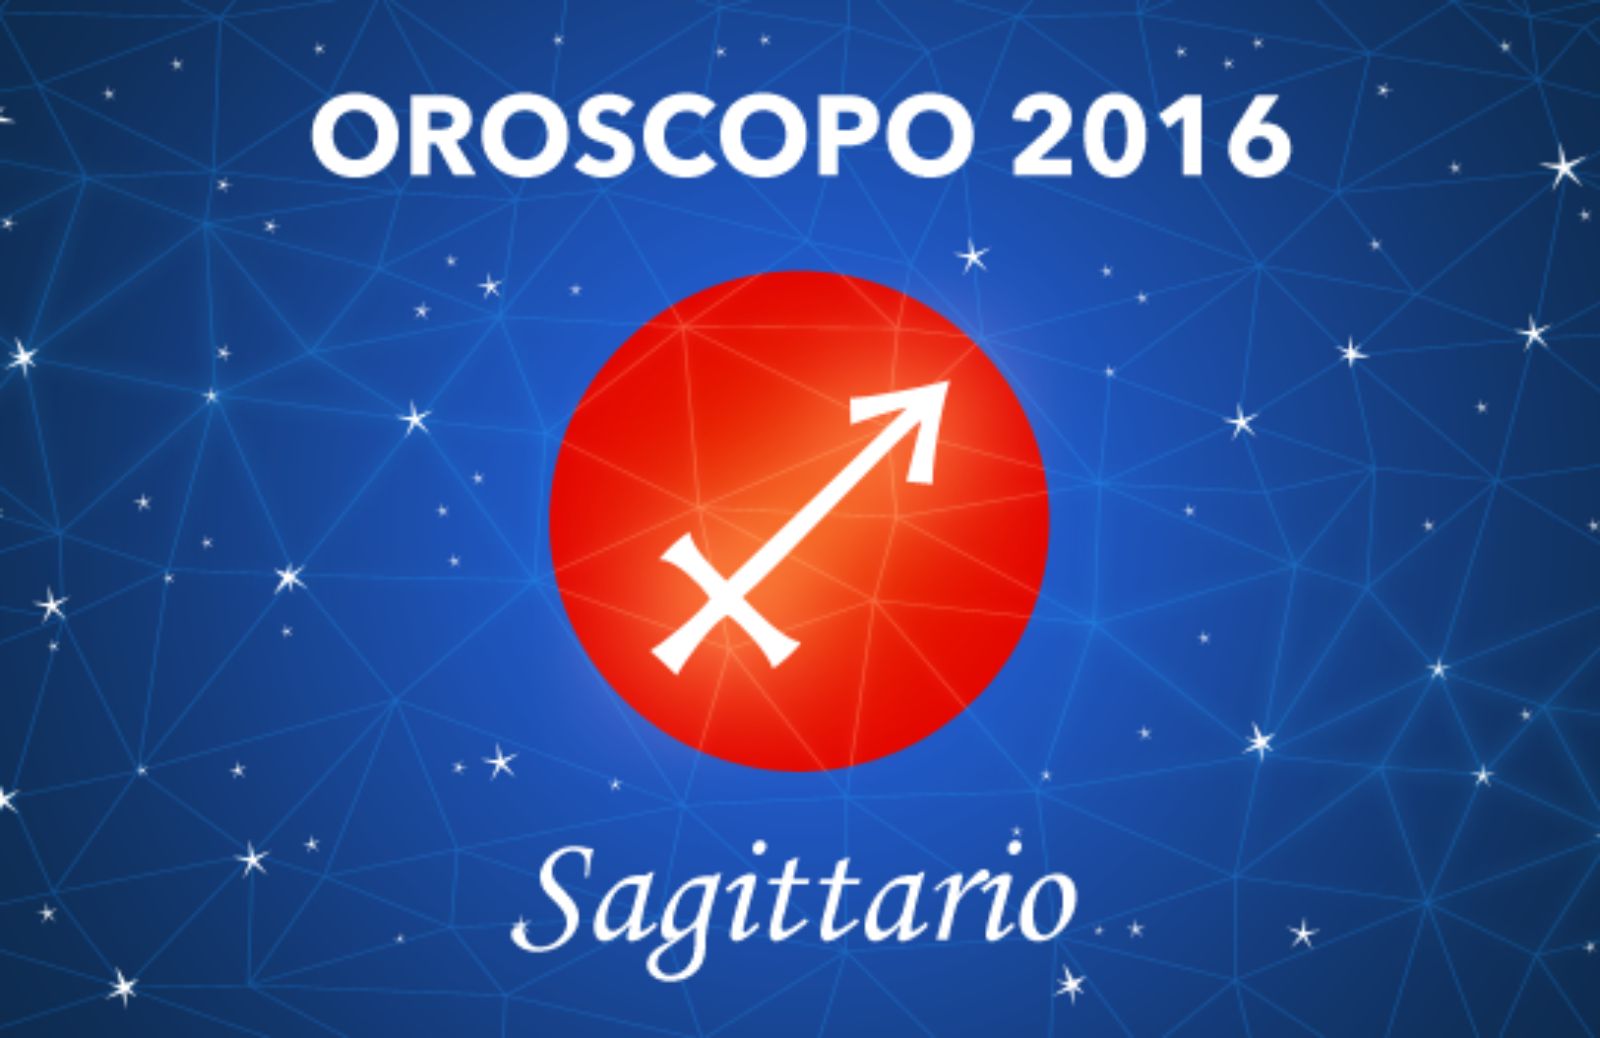 Oroscopo 2016 - Sagittario